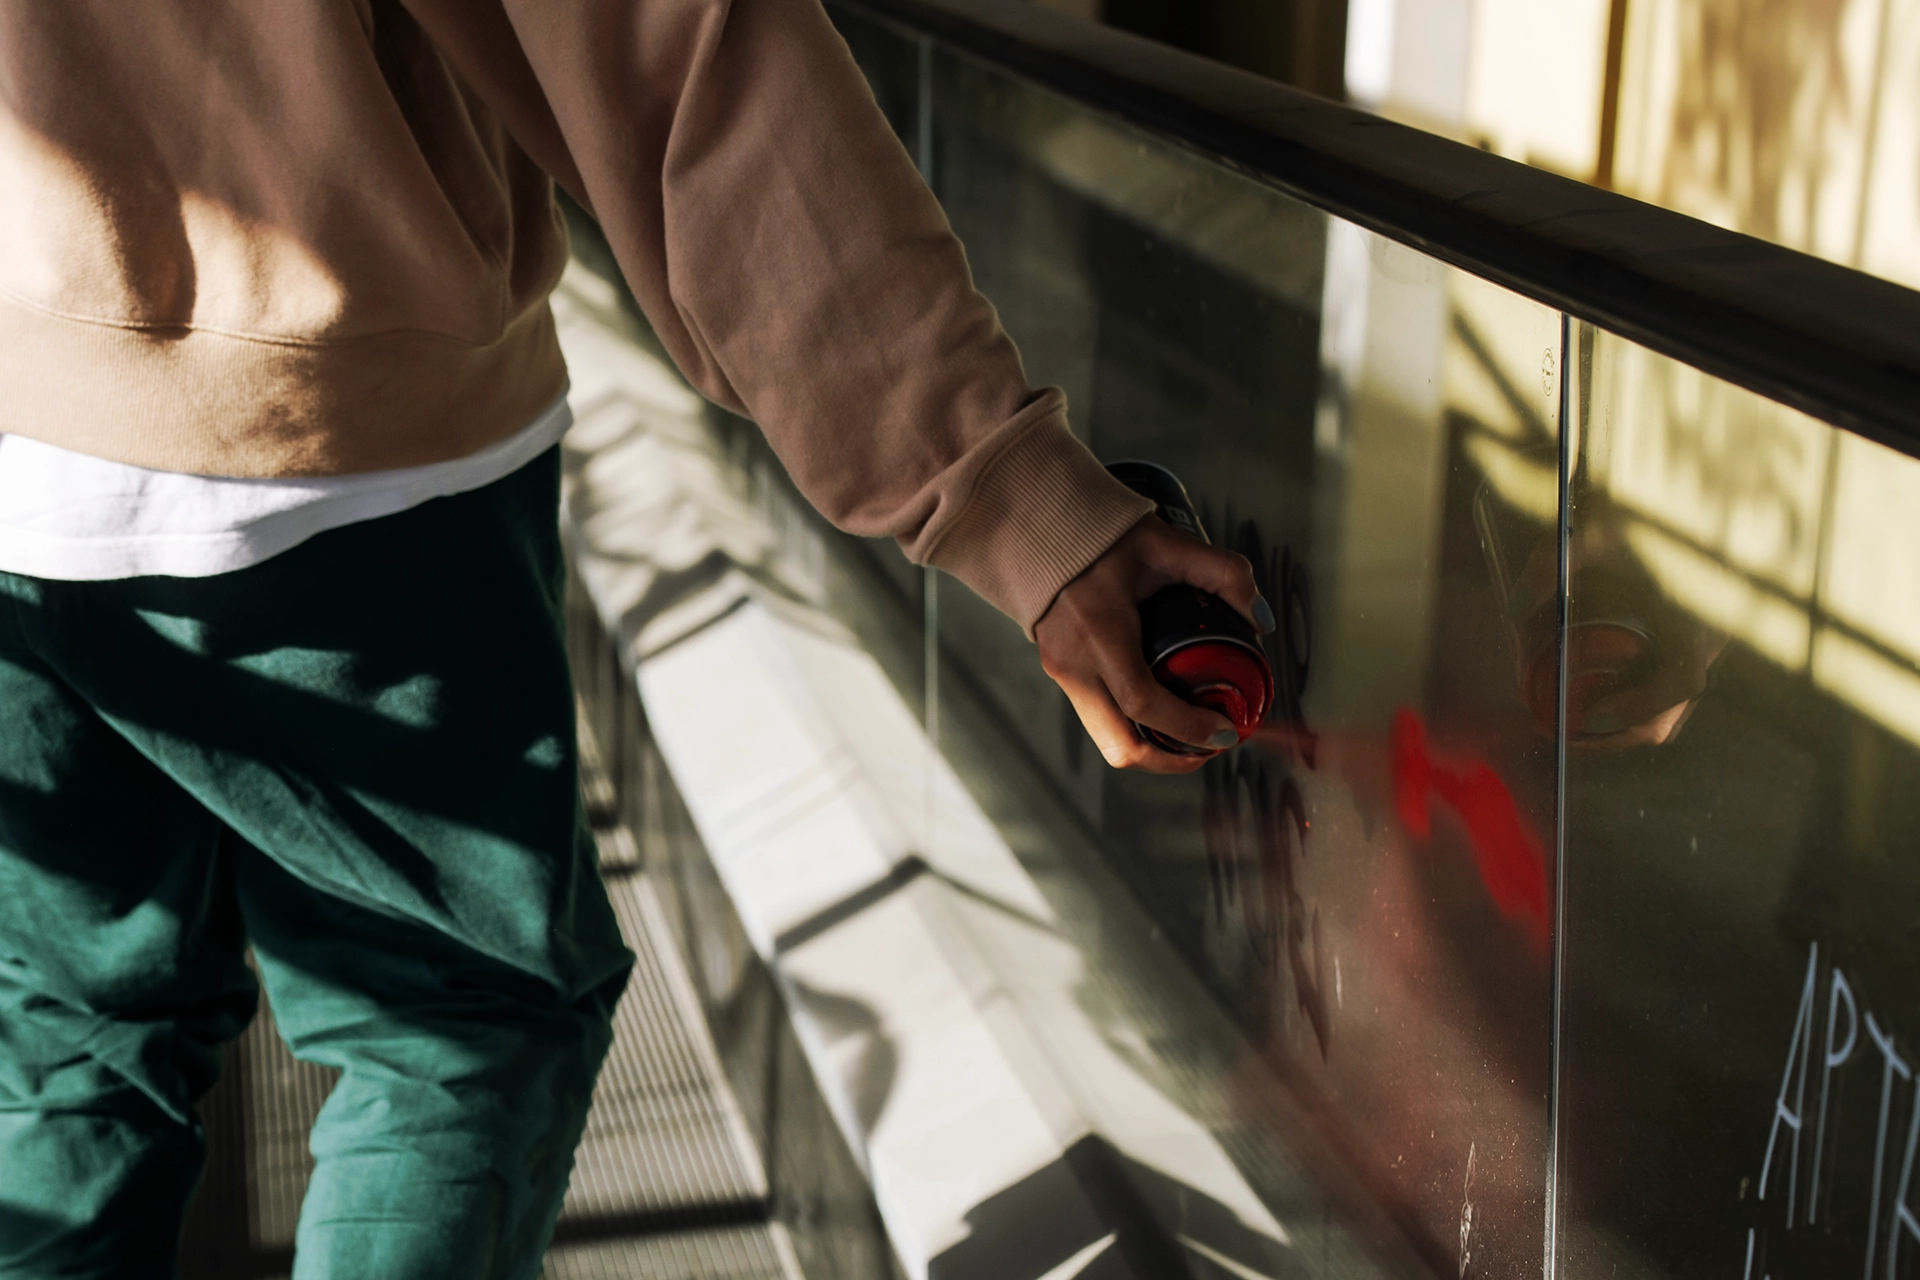 la pellicola antigraffiti protegge il vetro dalla vernice